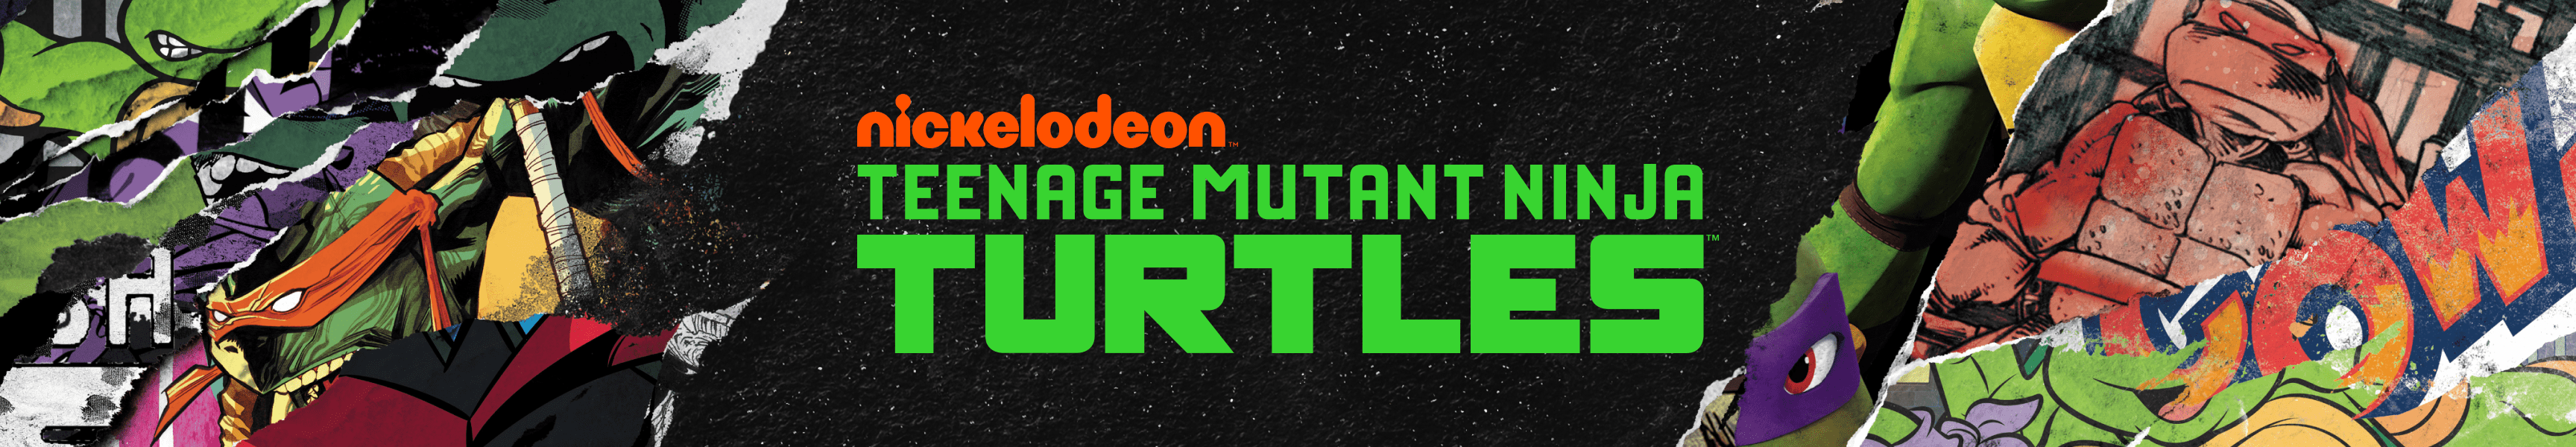 Teenage Mutant Ninja Turtles Autocollants